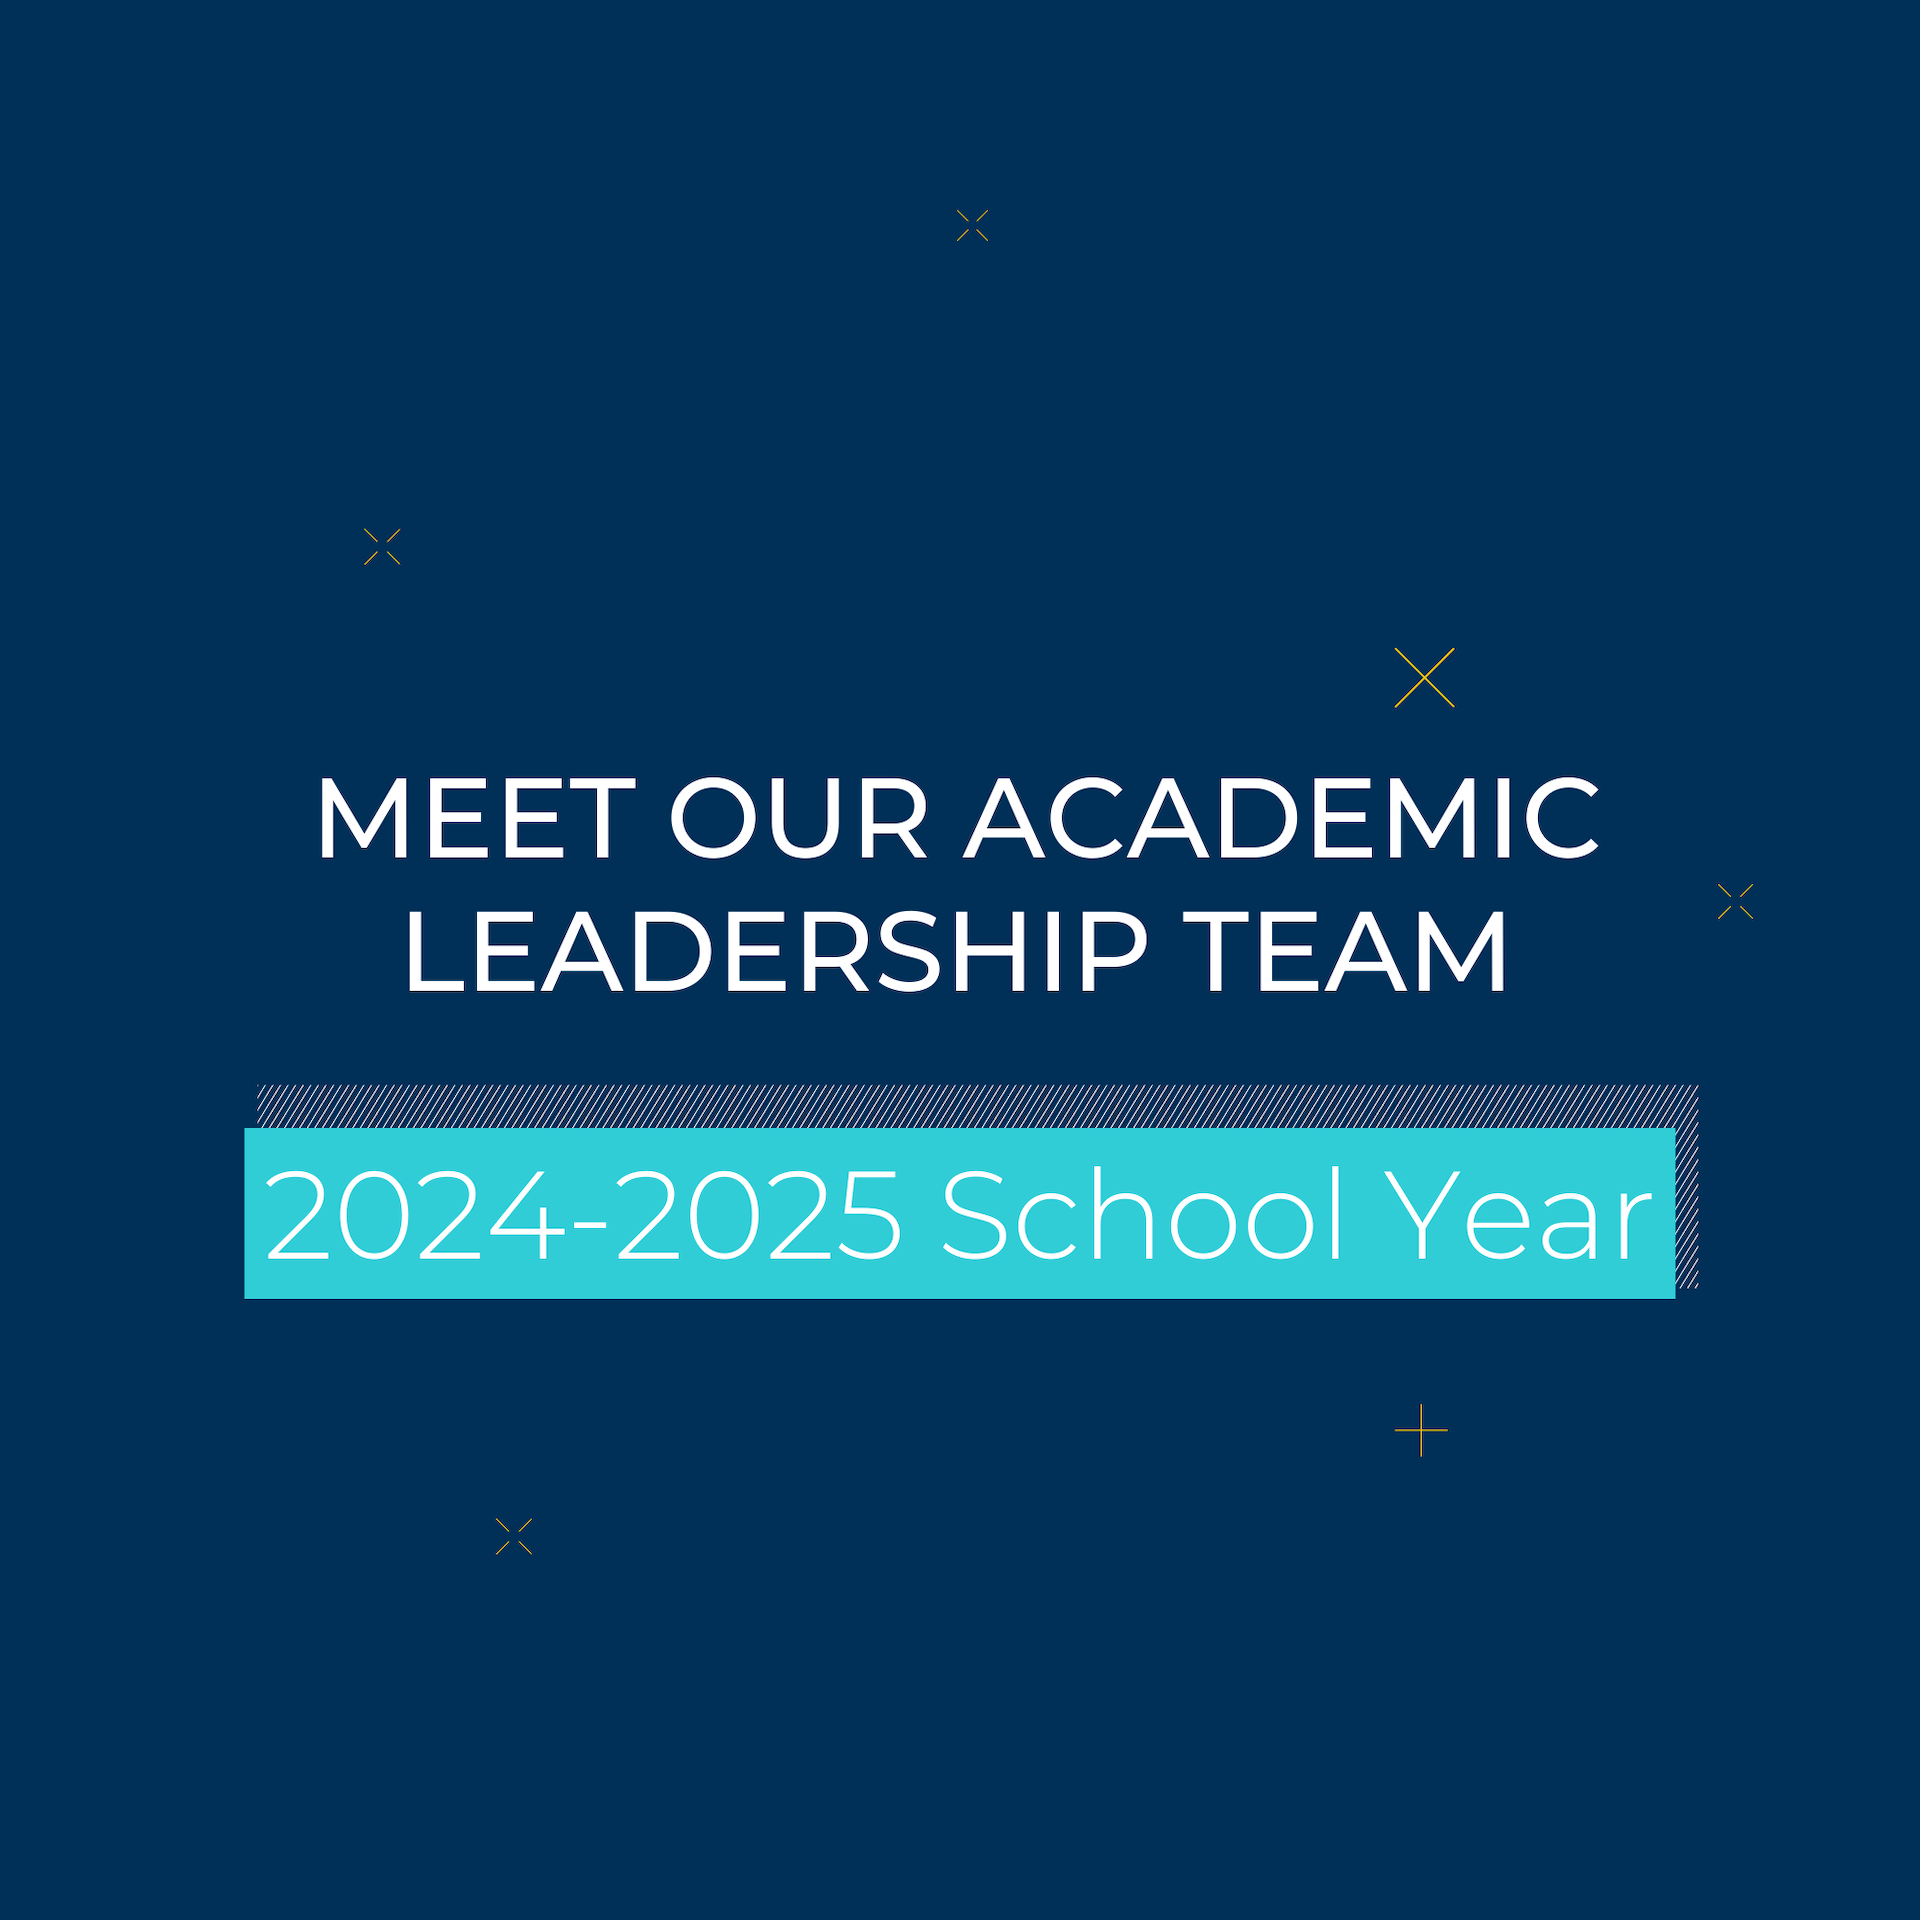 乐盟2024-2025学年教学领导团队介绍-Meet Our Academic Leadership Team in 2024-2025 School Year-2